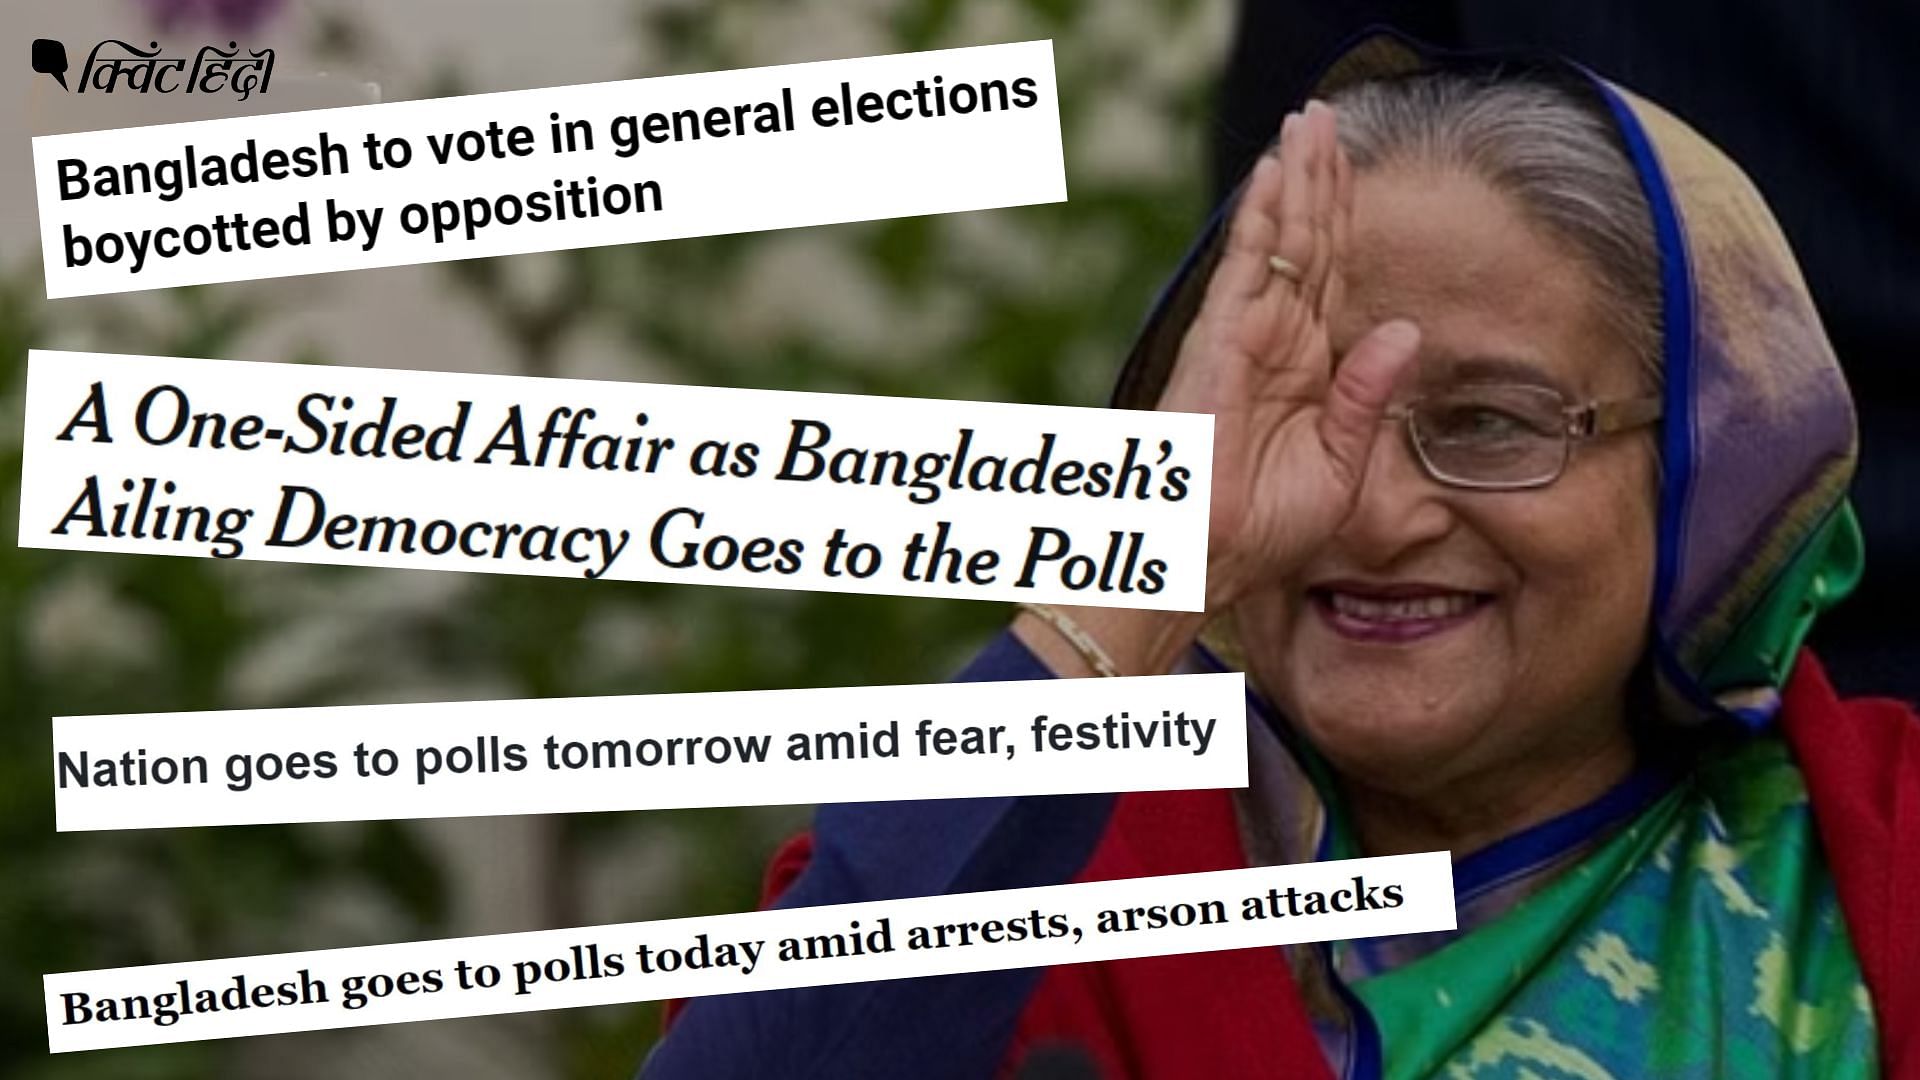 <div class="paragraphs"><p>Bangladesh Election: 'गिरफ्तारी-आगजनी के बीच', 'एक तरफा चुनाव'- क्या कह रहा है विदेशी मीडिया</p></div>